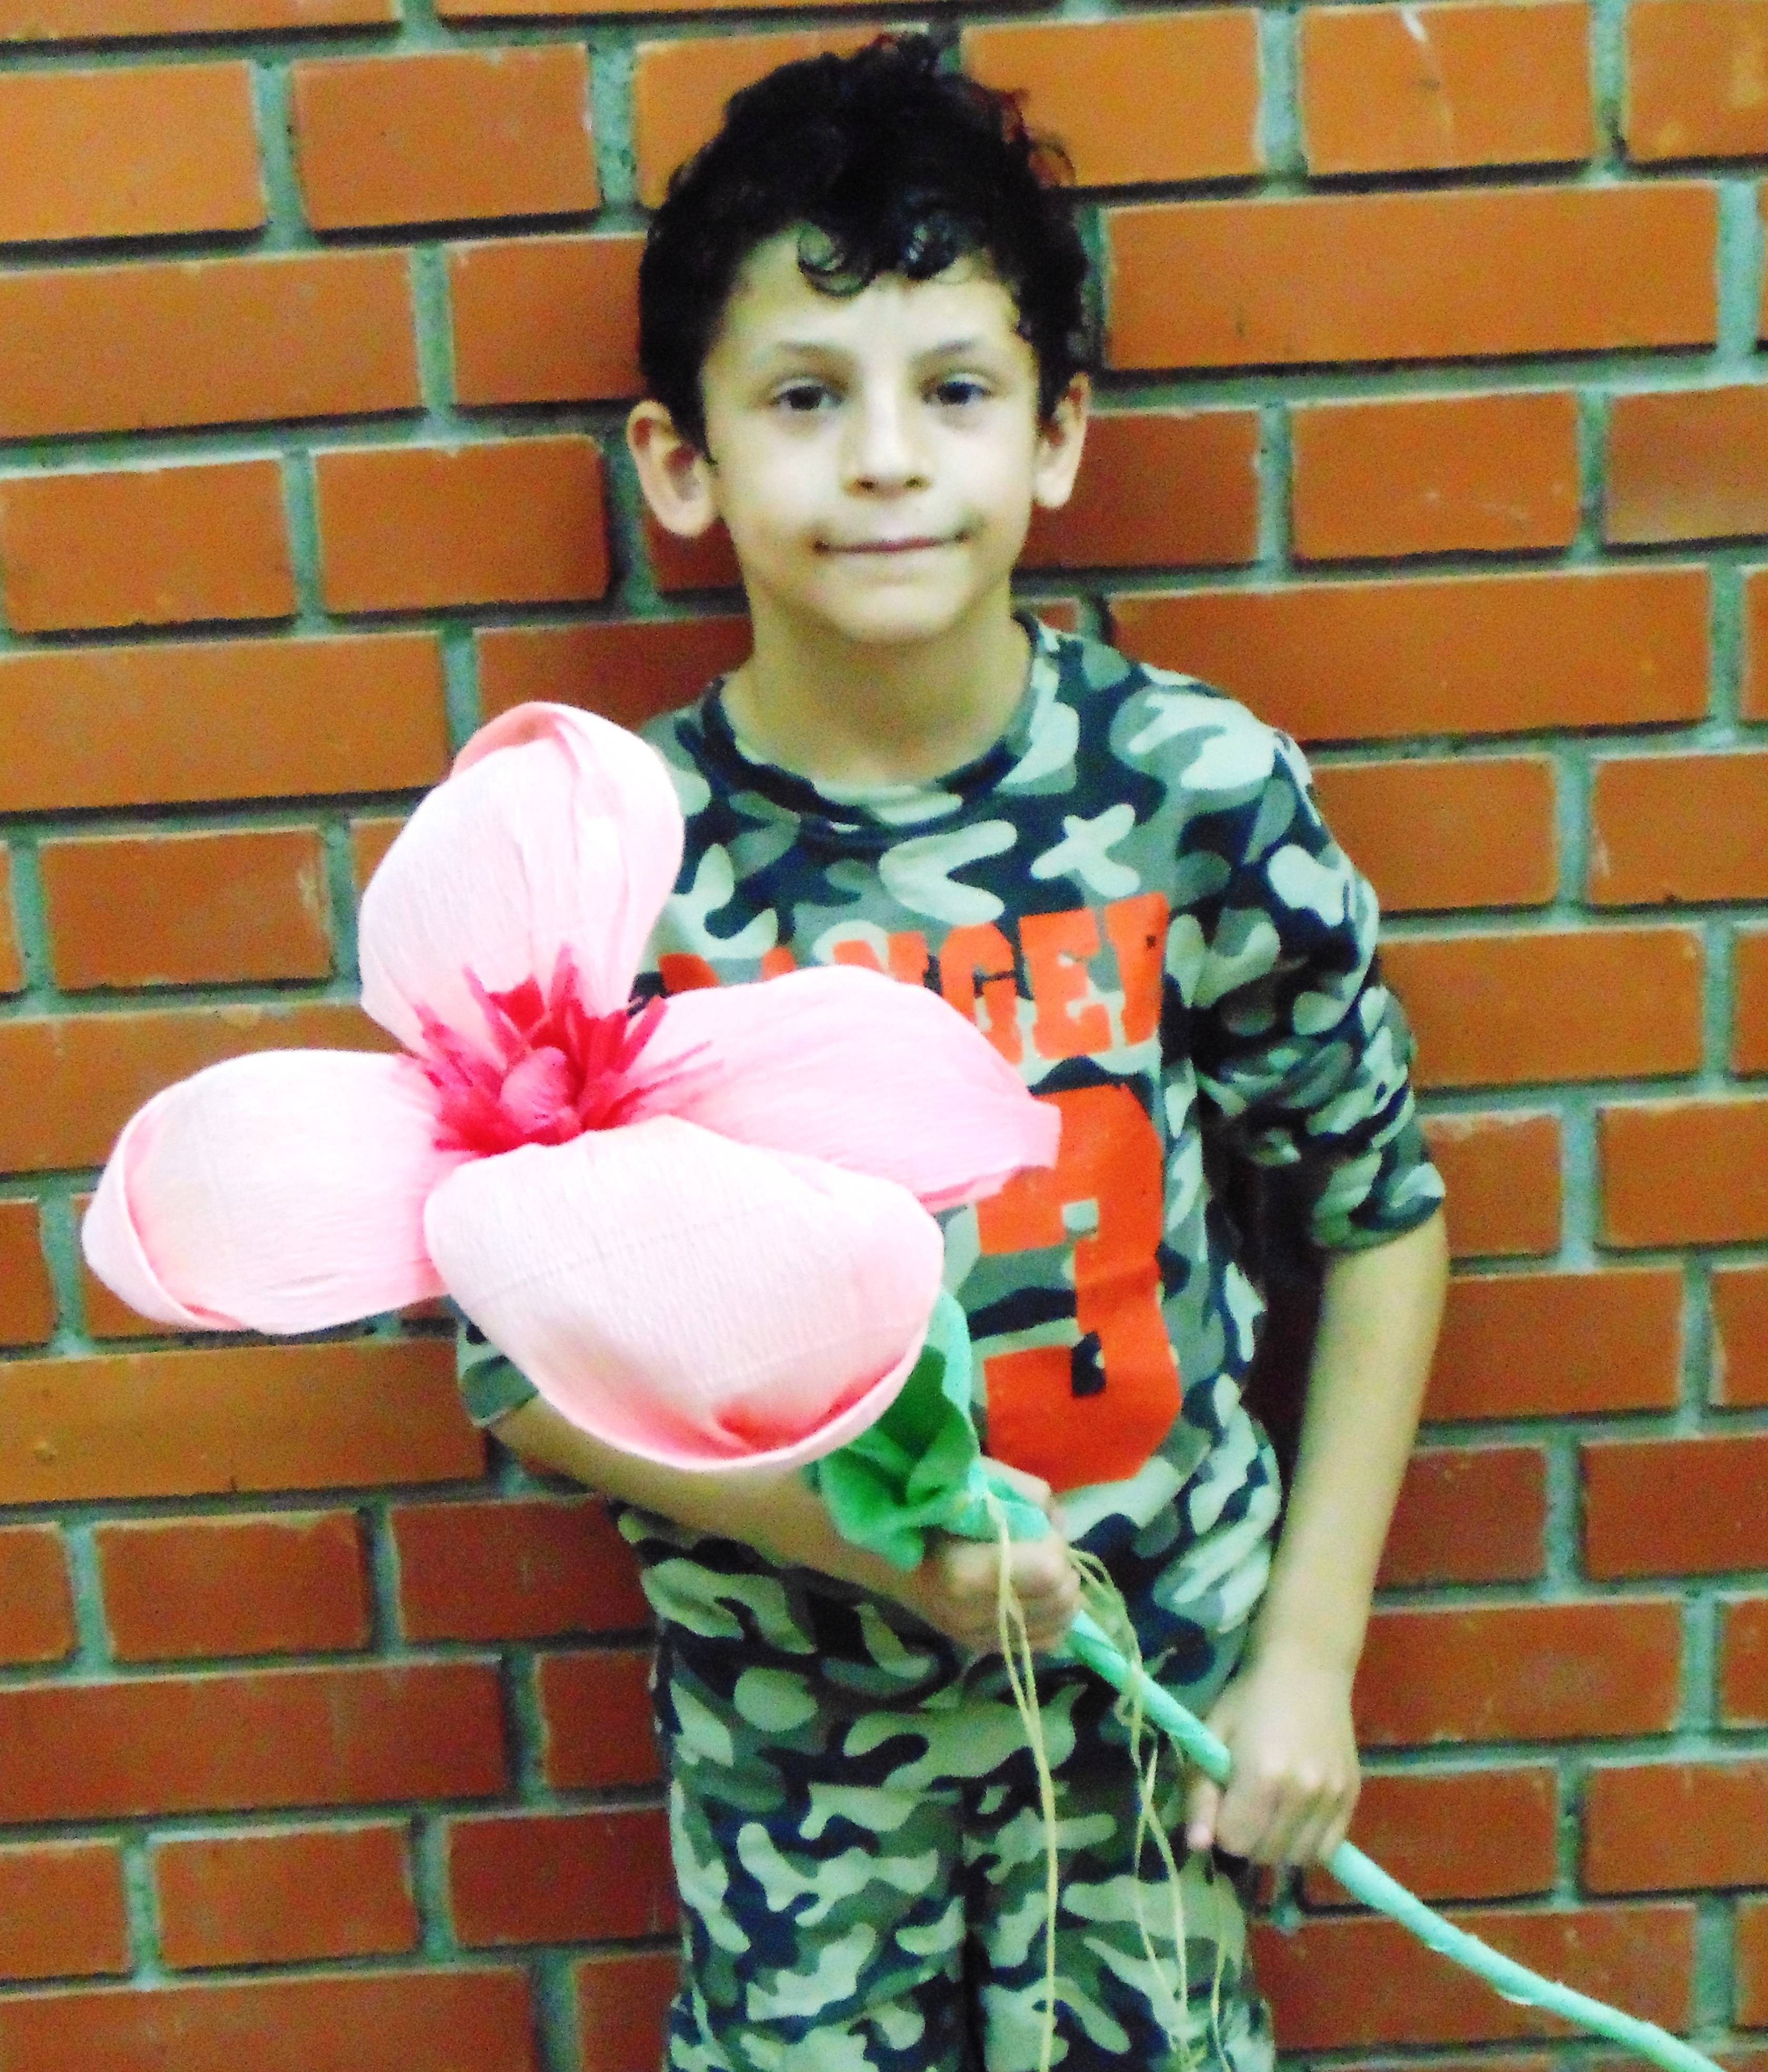 David je pripremio cvijet za idui susret sa Sanjom Pili.